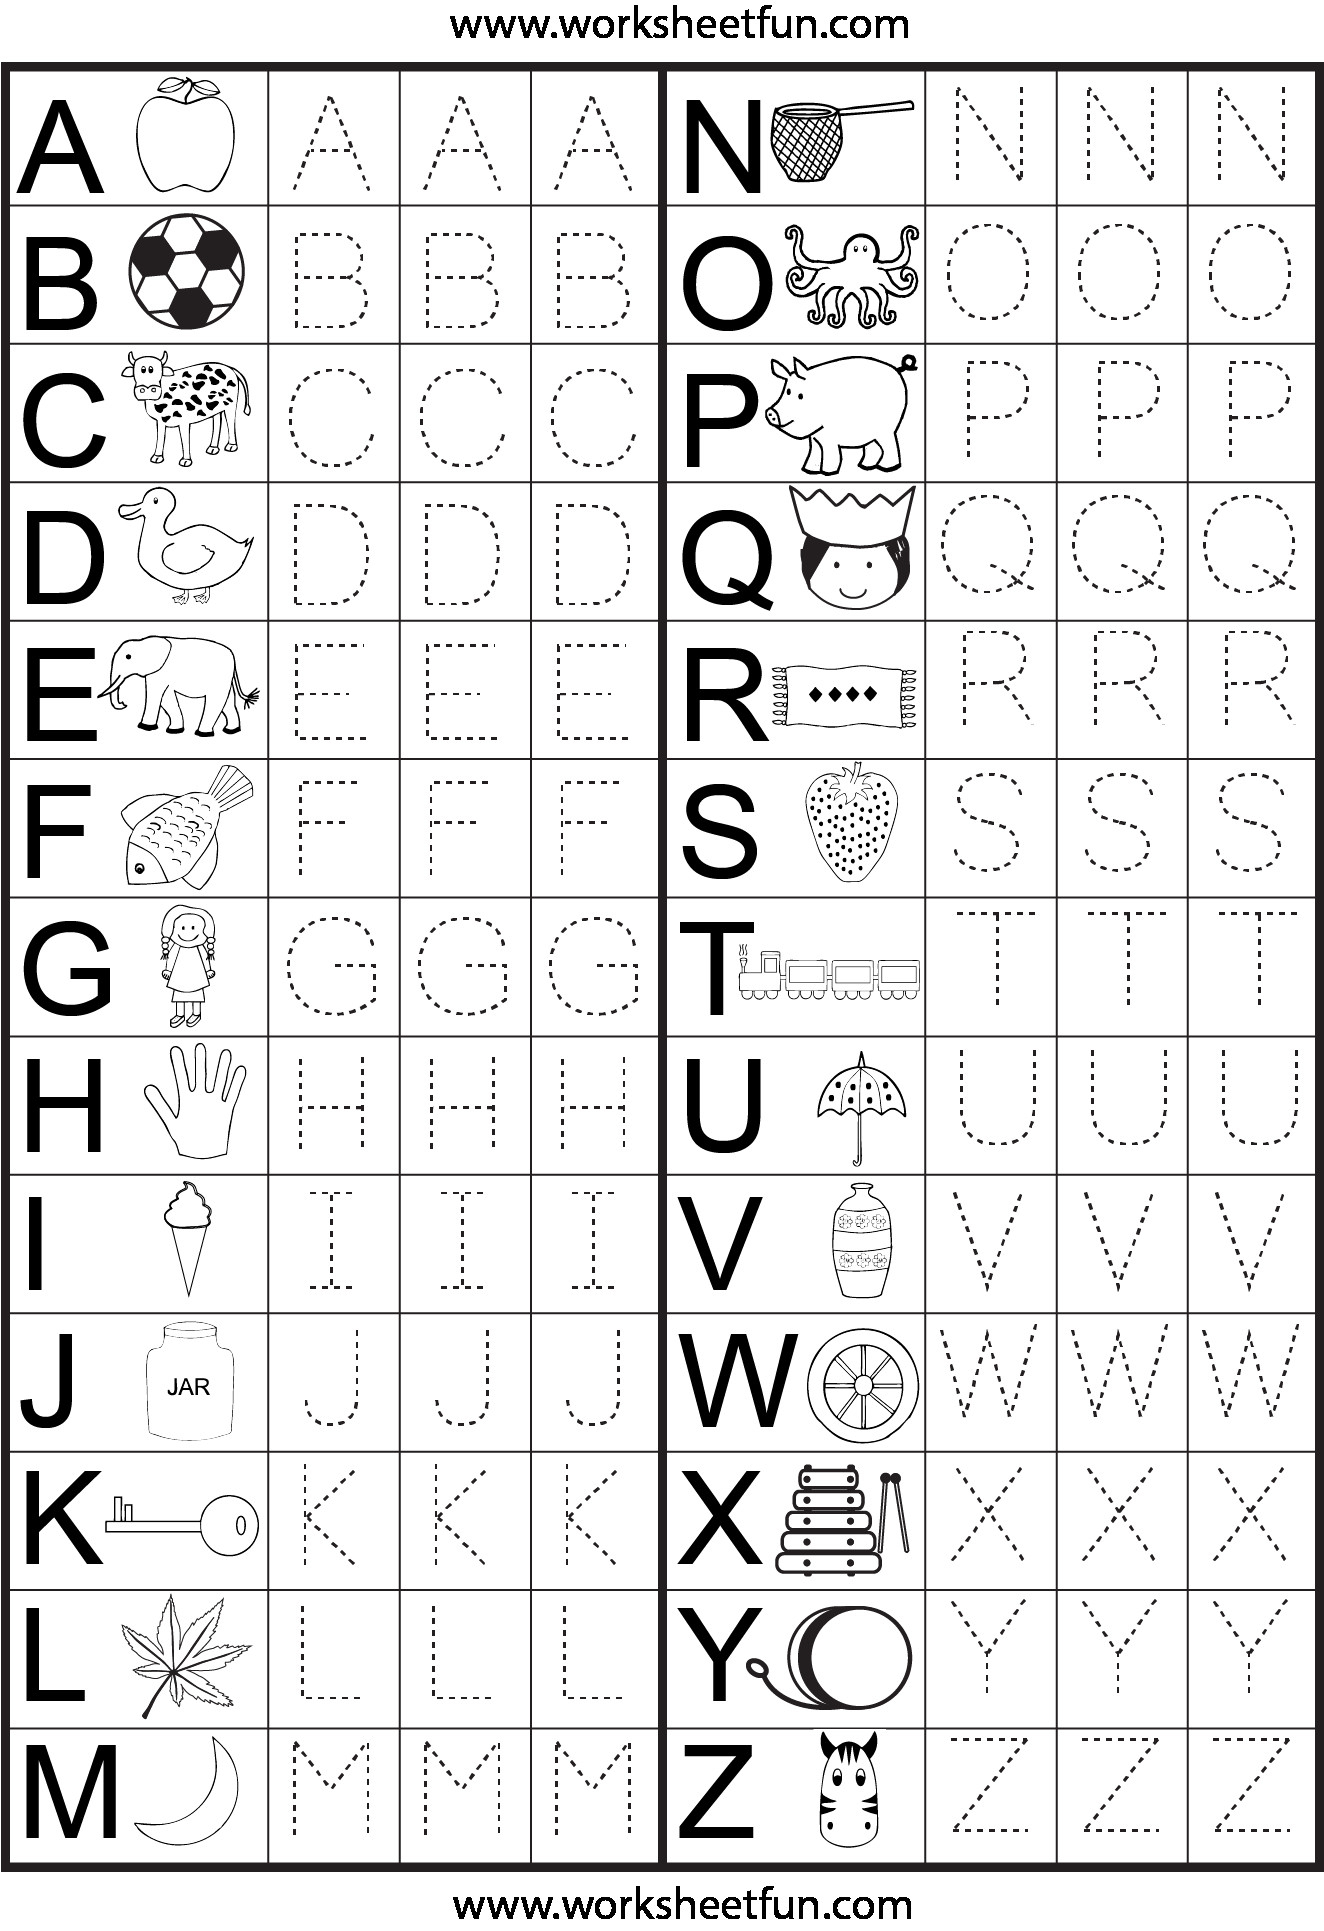 5 3 Year Old Alphabet Worksheets - Worksheets Schools throughout 3 Year Old Alphabet Worksheets